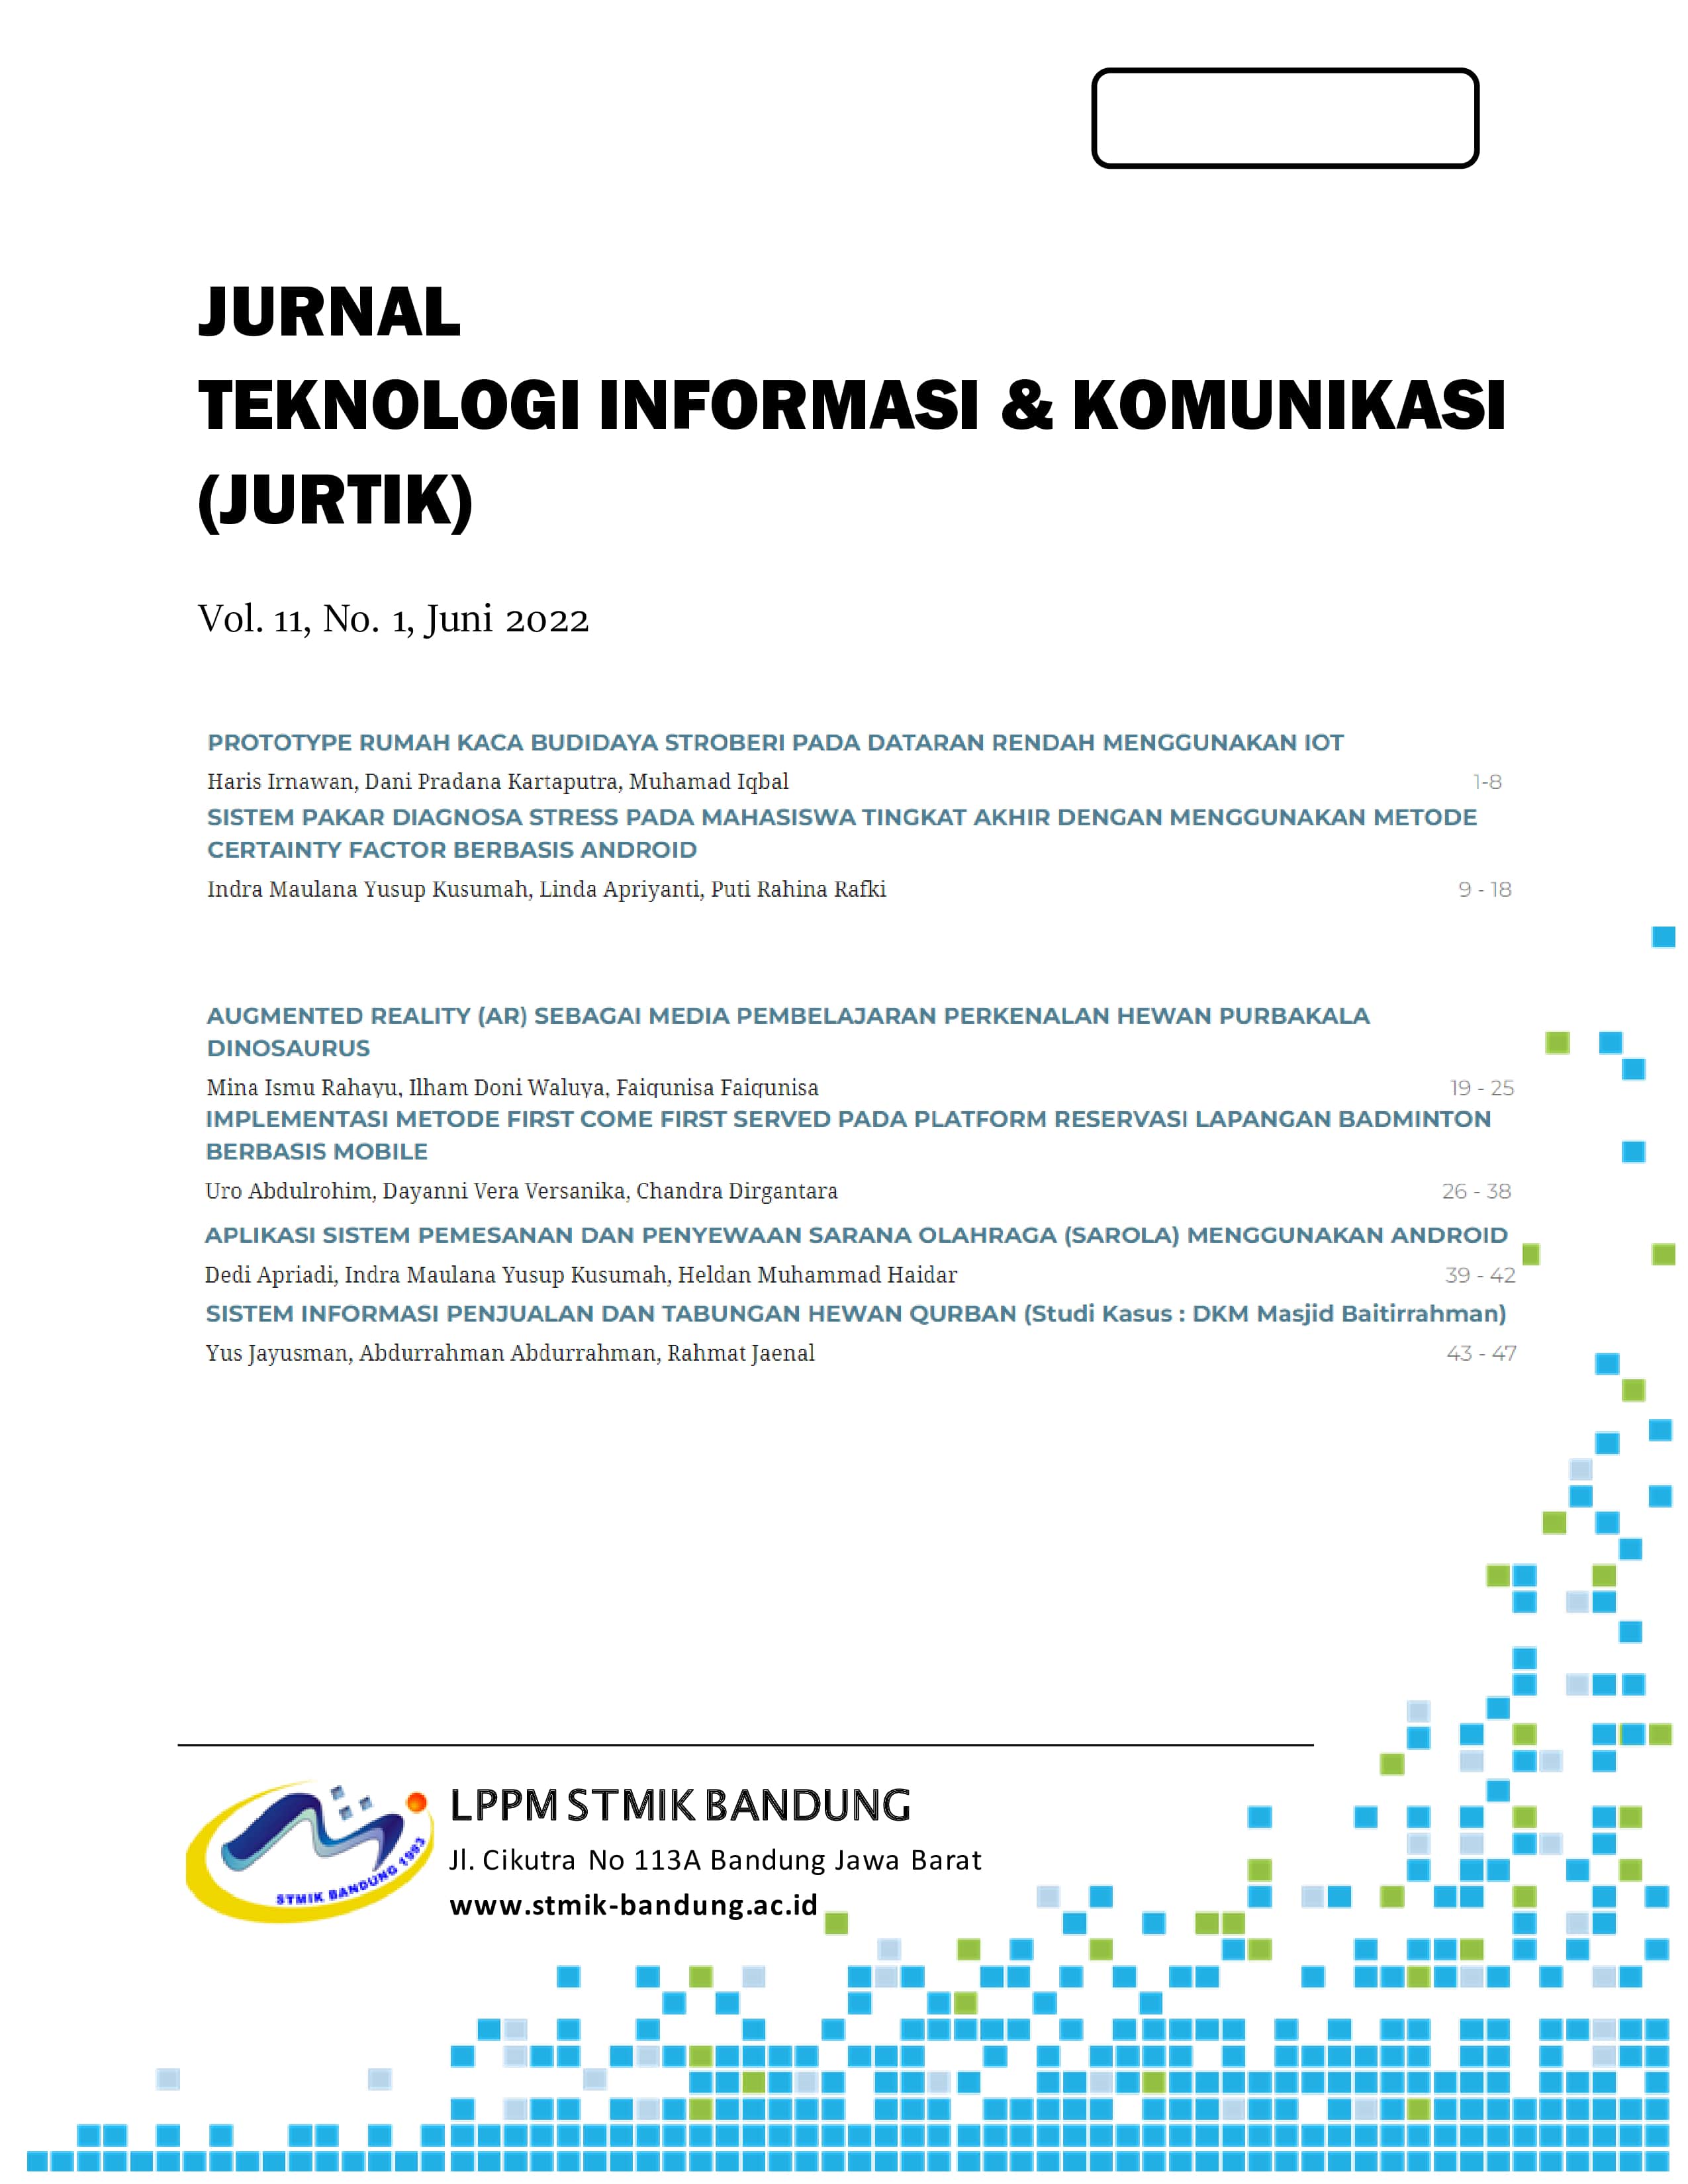 					View Vol. 11 No. 1 (2022): JURTIK: Jurnal Teknologi Informasi dan Komunikasi 
				